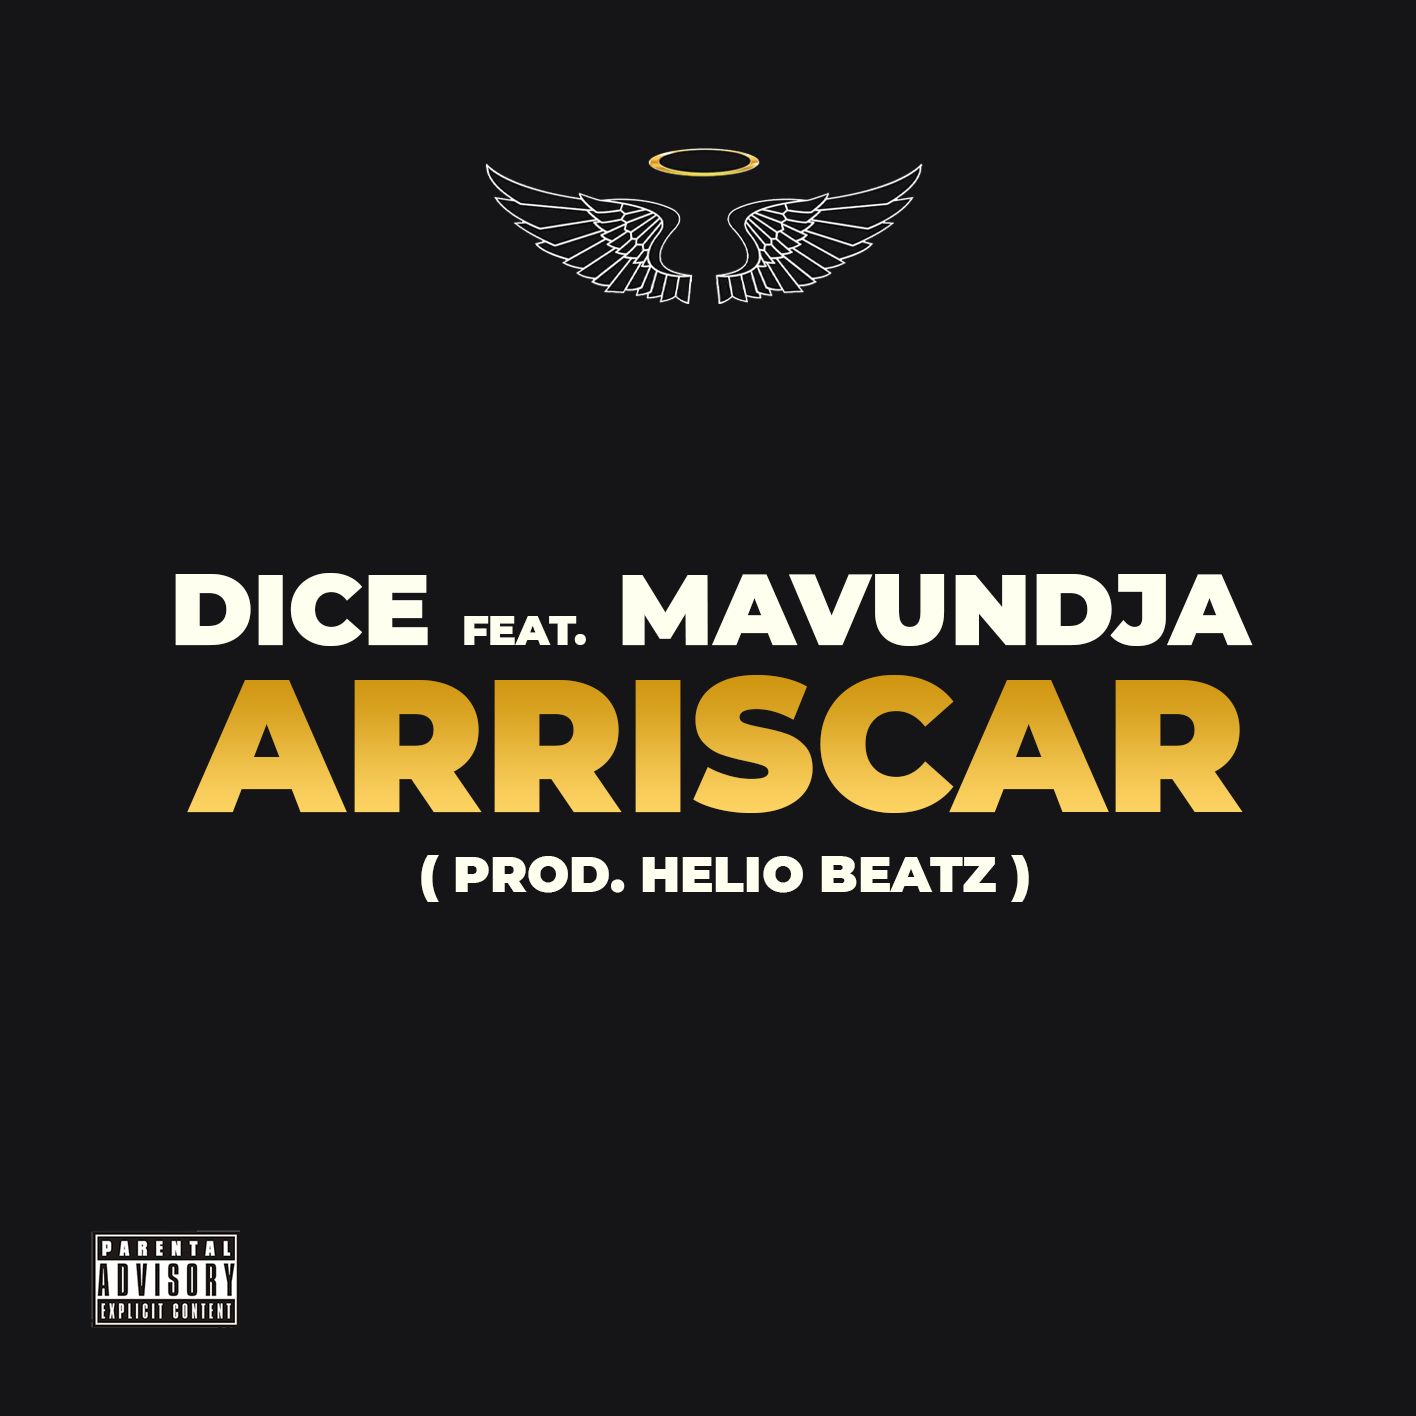 Dice – Arriscar (feat. Mavundja)